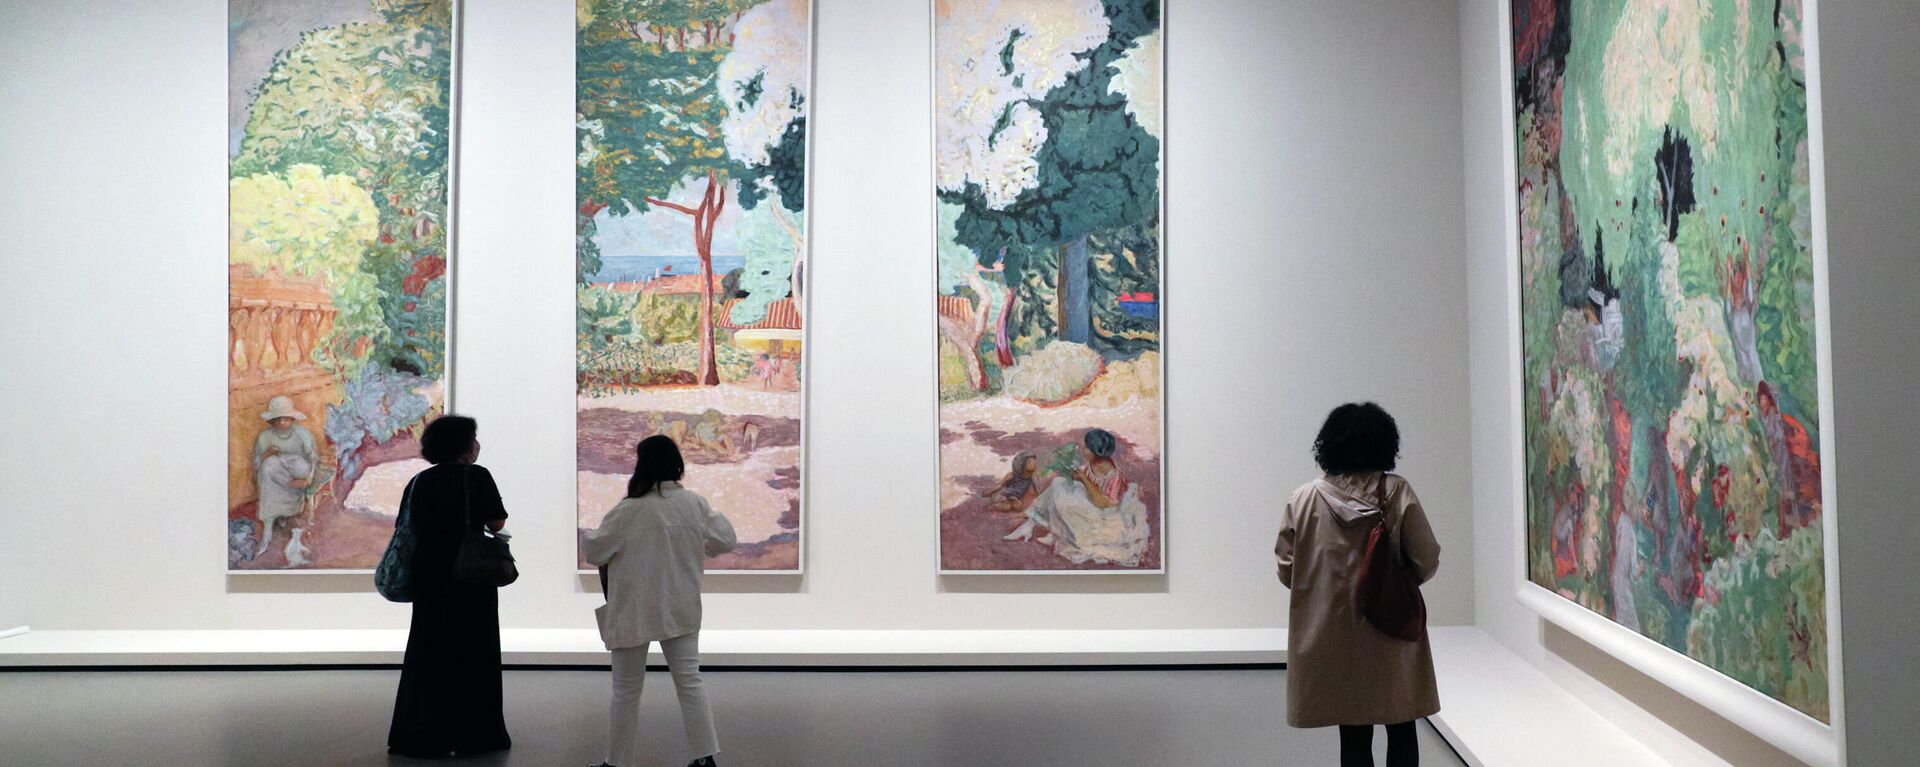 Посетители смотрят на картины французского художника Пьера Боннара во время пресс-показа выставки коллекции братьев Морозовых в Фонде Louis Vuitton в Париже - Sputnik Грузия, 1920, 22.09.2021